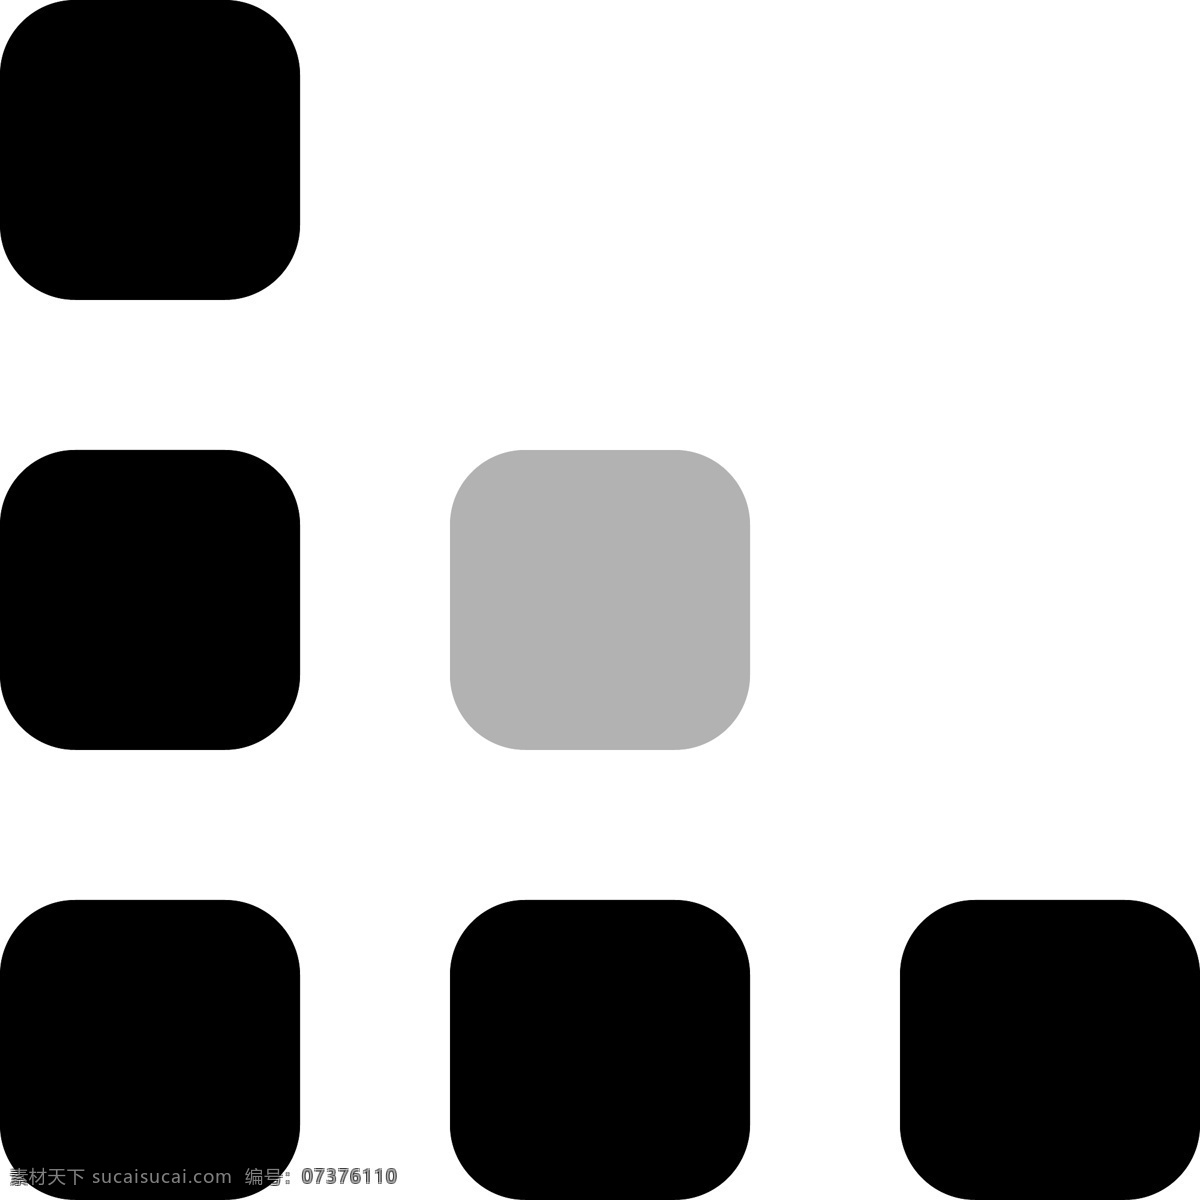 卡通 黑 灰色 俄罗斯 方块 三角形 符号 图标 黑灰色 应用图标 微信图标 俄罗斯方块 ui图标 ppt图标 标志图标